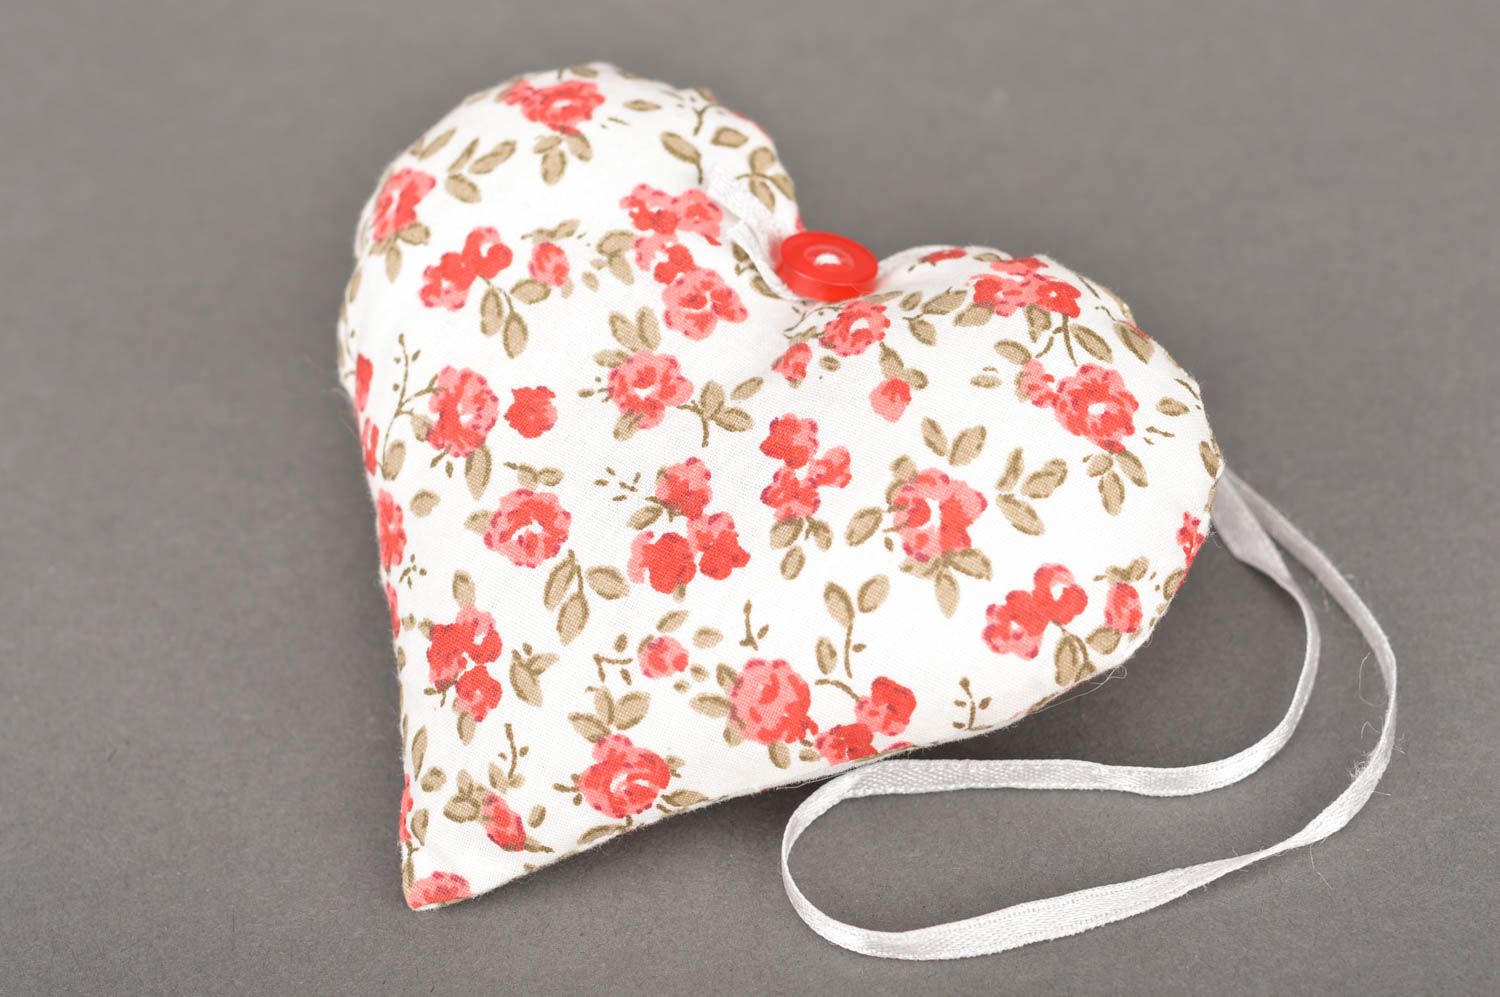 Мягкая подвеска из ткани для интерьера ручной работы в виде сердца красивая фото 2